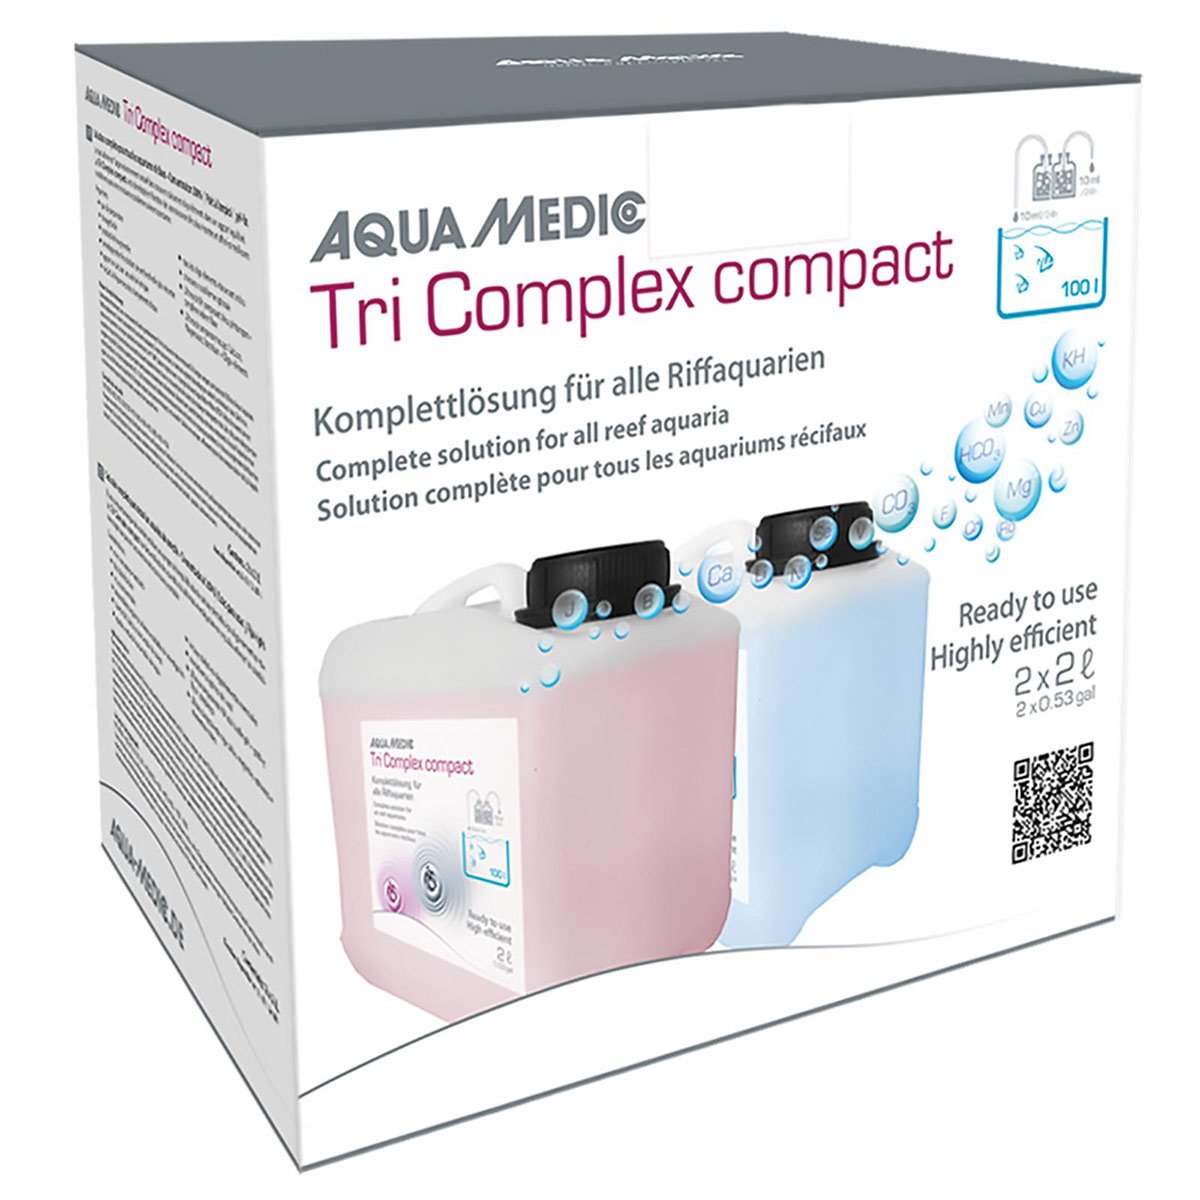 Aqua Medic Tri Complex Compact 2x5L von Aqua Medic